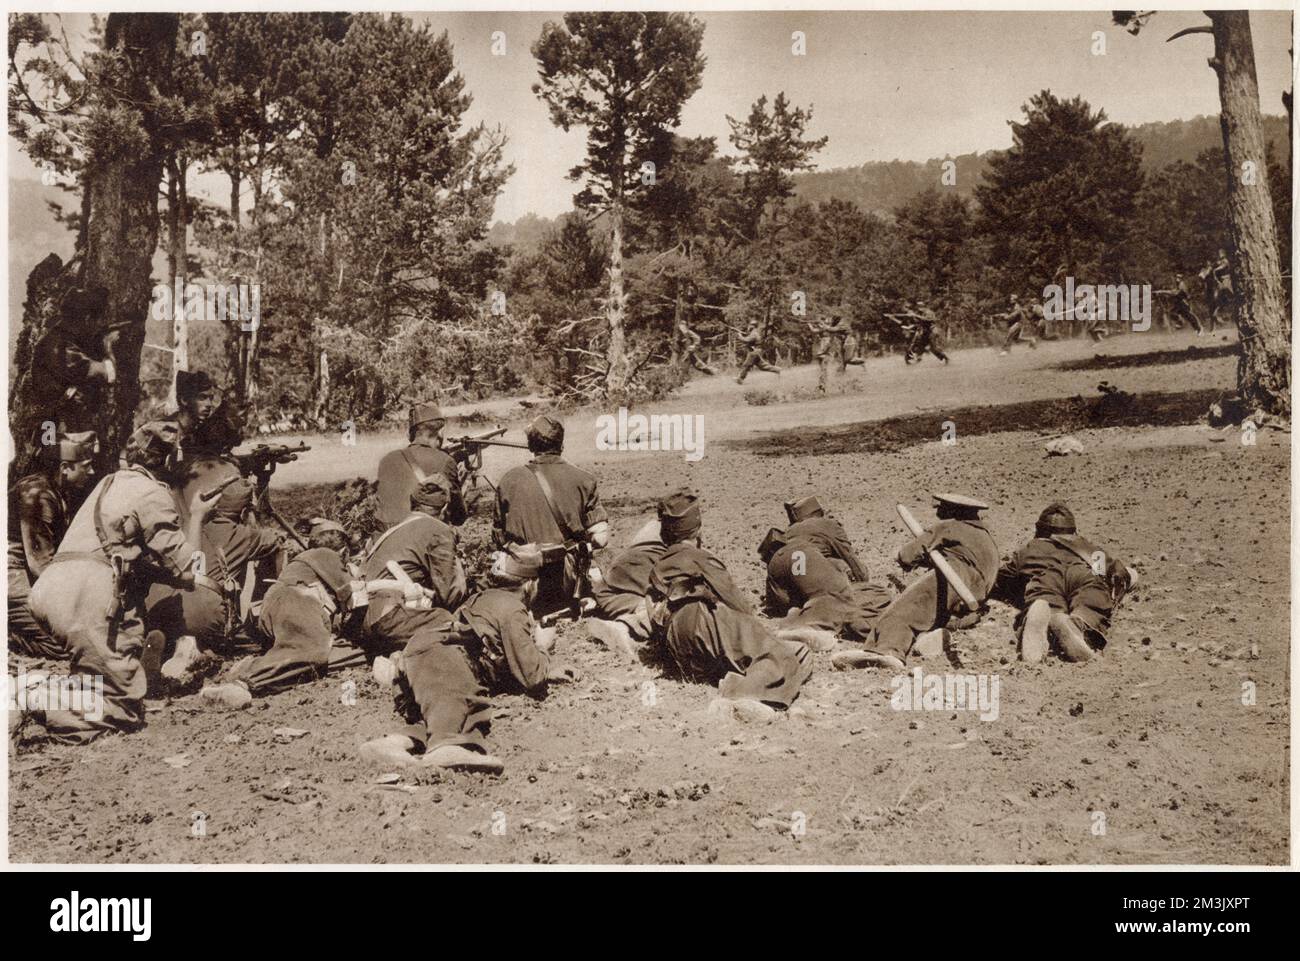 Ein Maschinengewehrabschnitt der republikanischen Armee (Vordergrund), der den Vormarsch einer Infanterieeinheit während der Kämpfe in den Guadarrama Hills in den frühen Stadien des Spanischen Bürgerkriegs abdeckte. Stockfoto